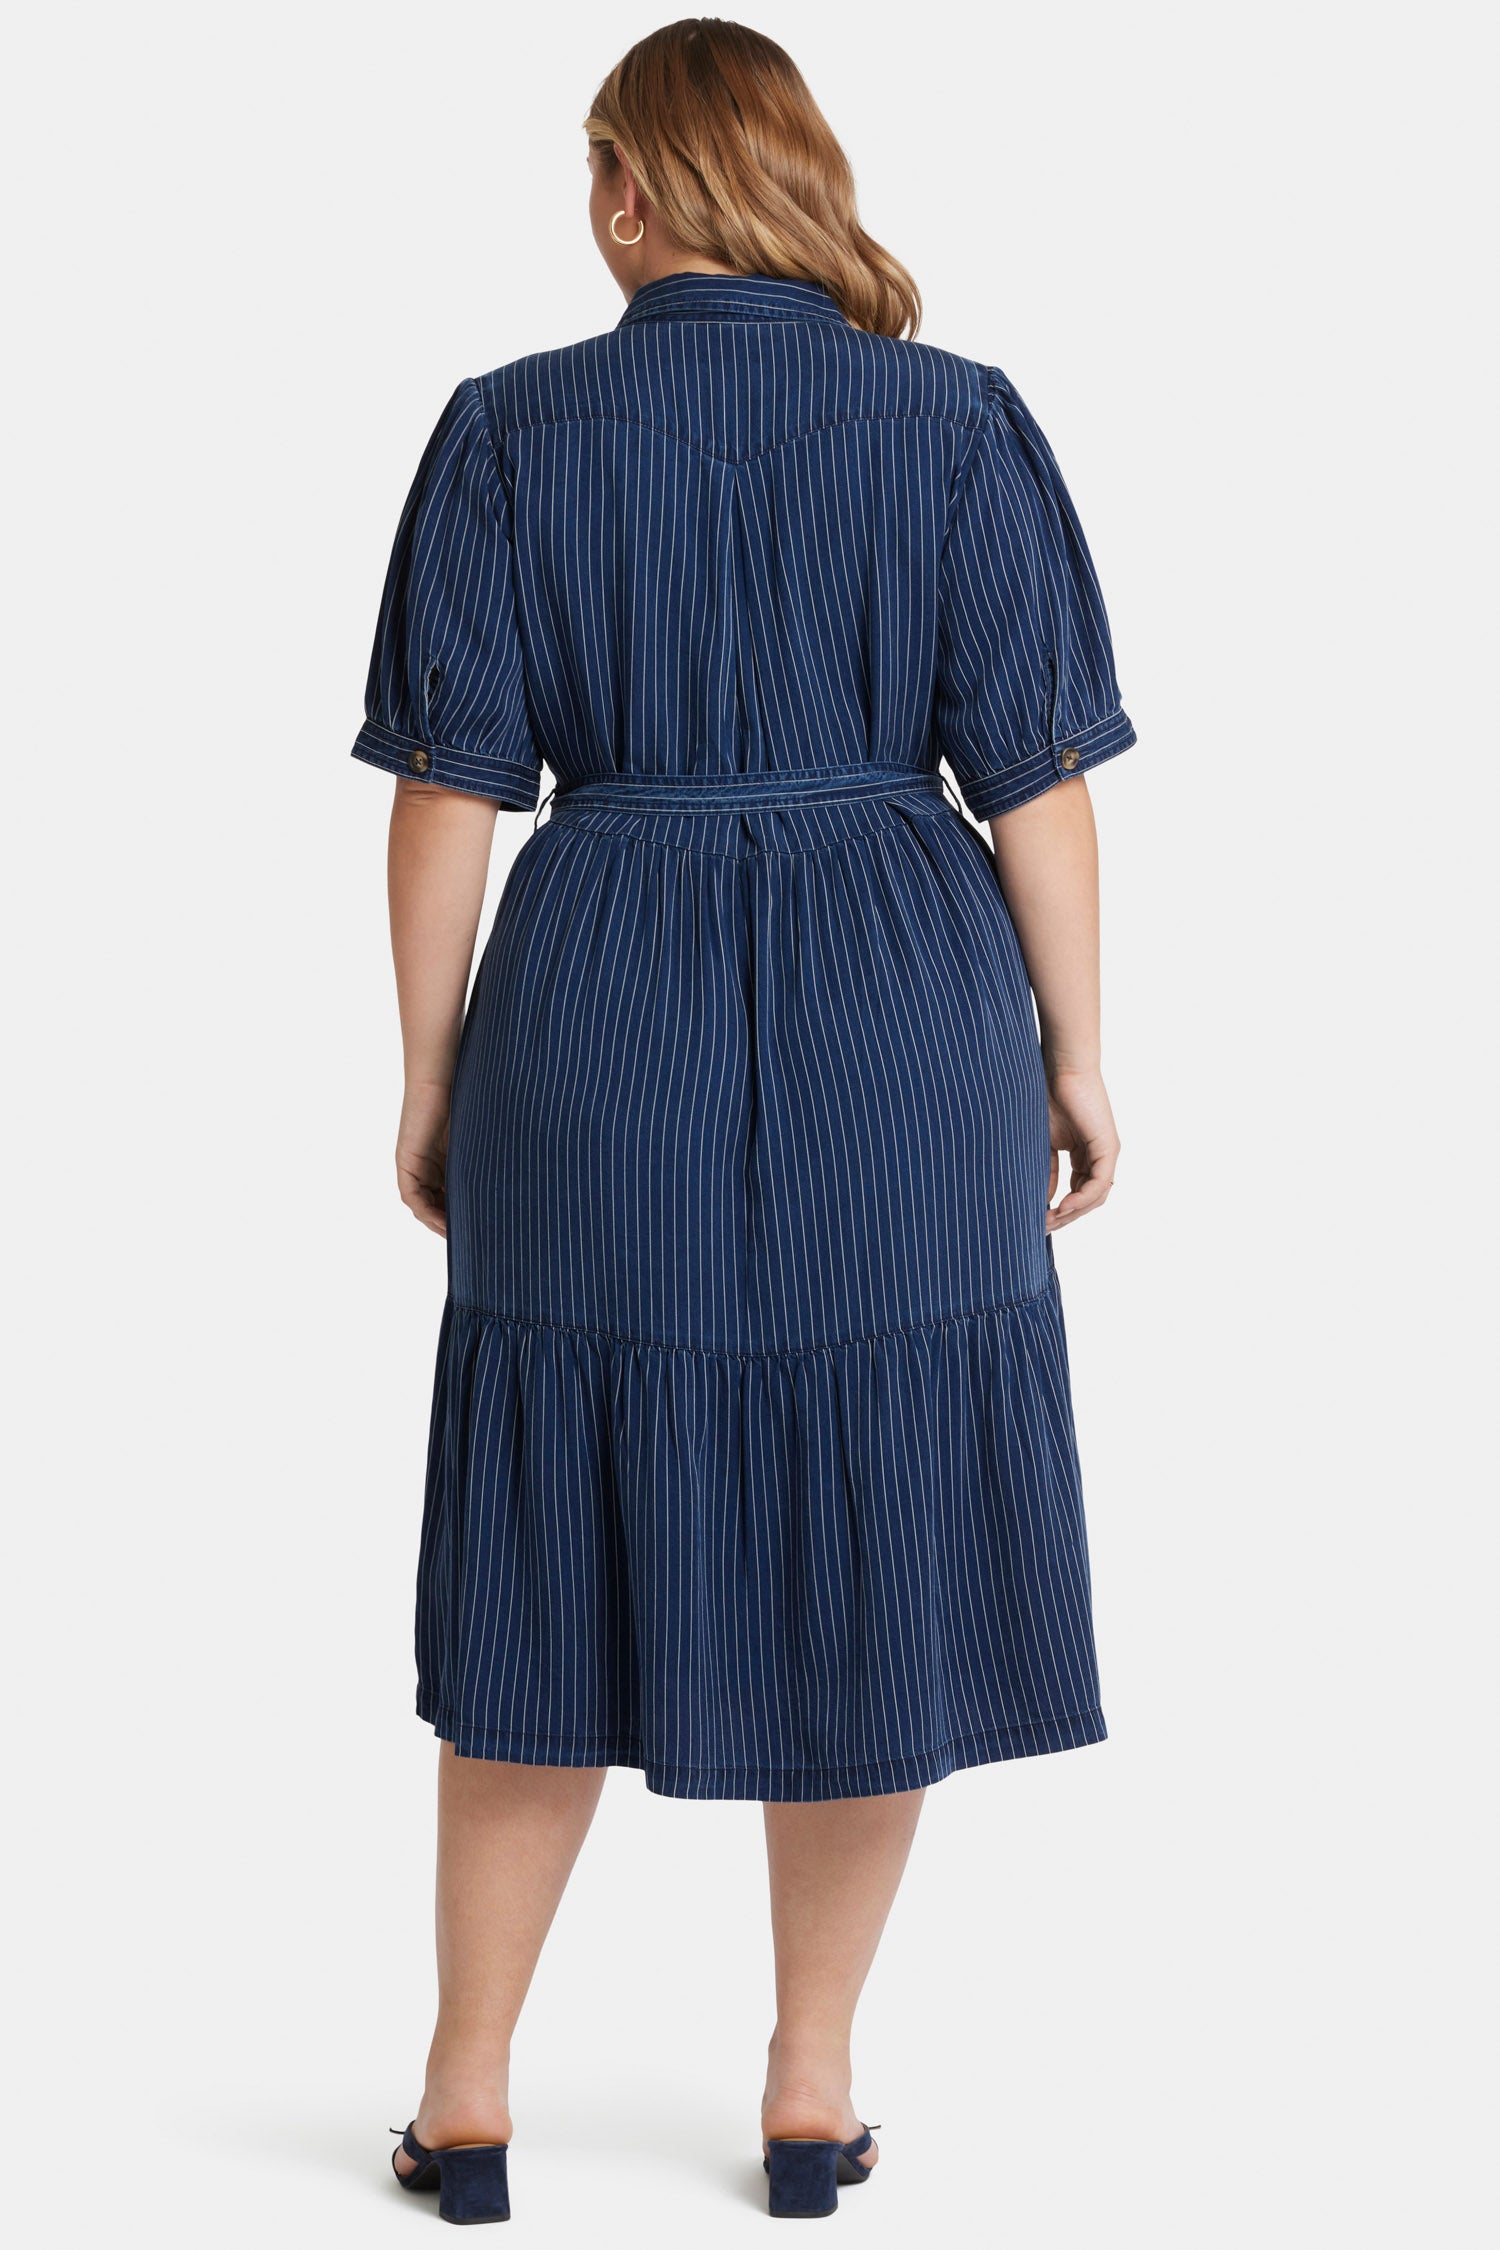 Kate Ruffle Dress In Plus Size - Dark Ocean Blue | NYDJ